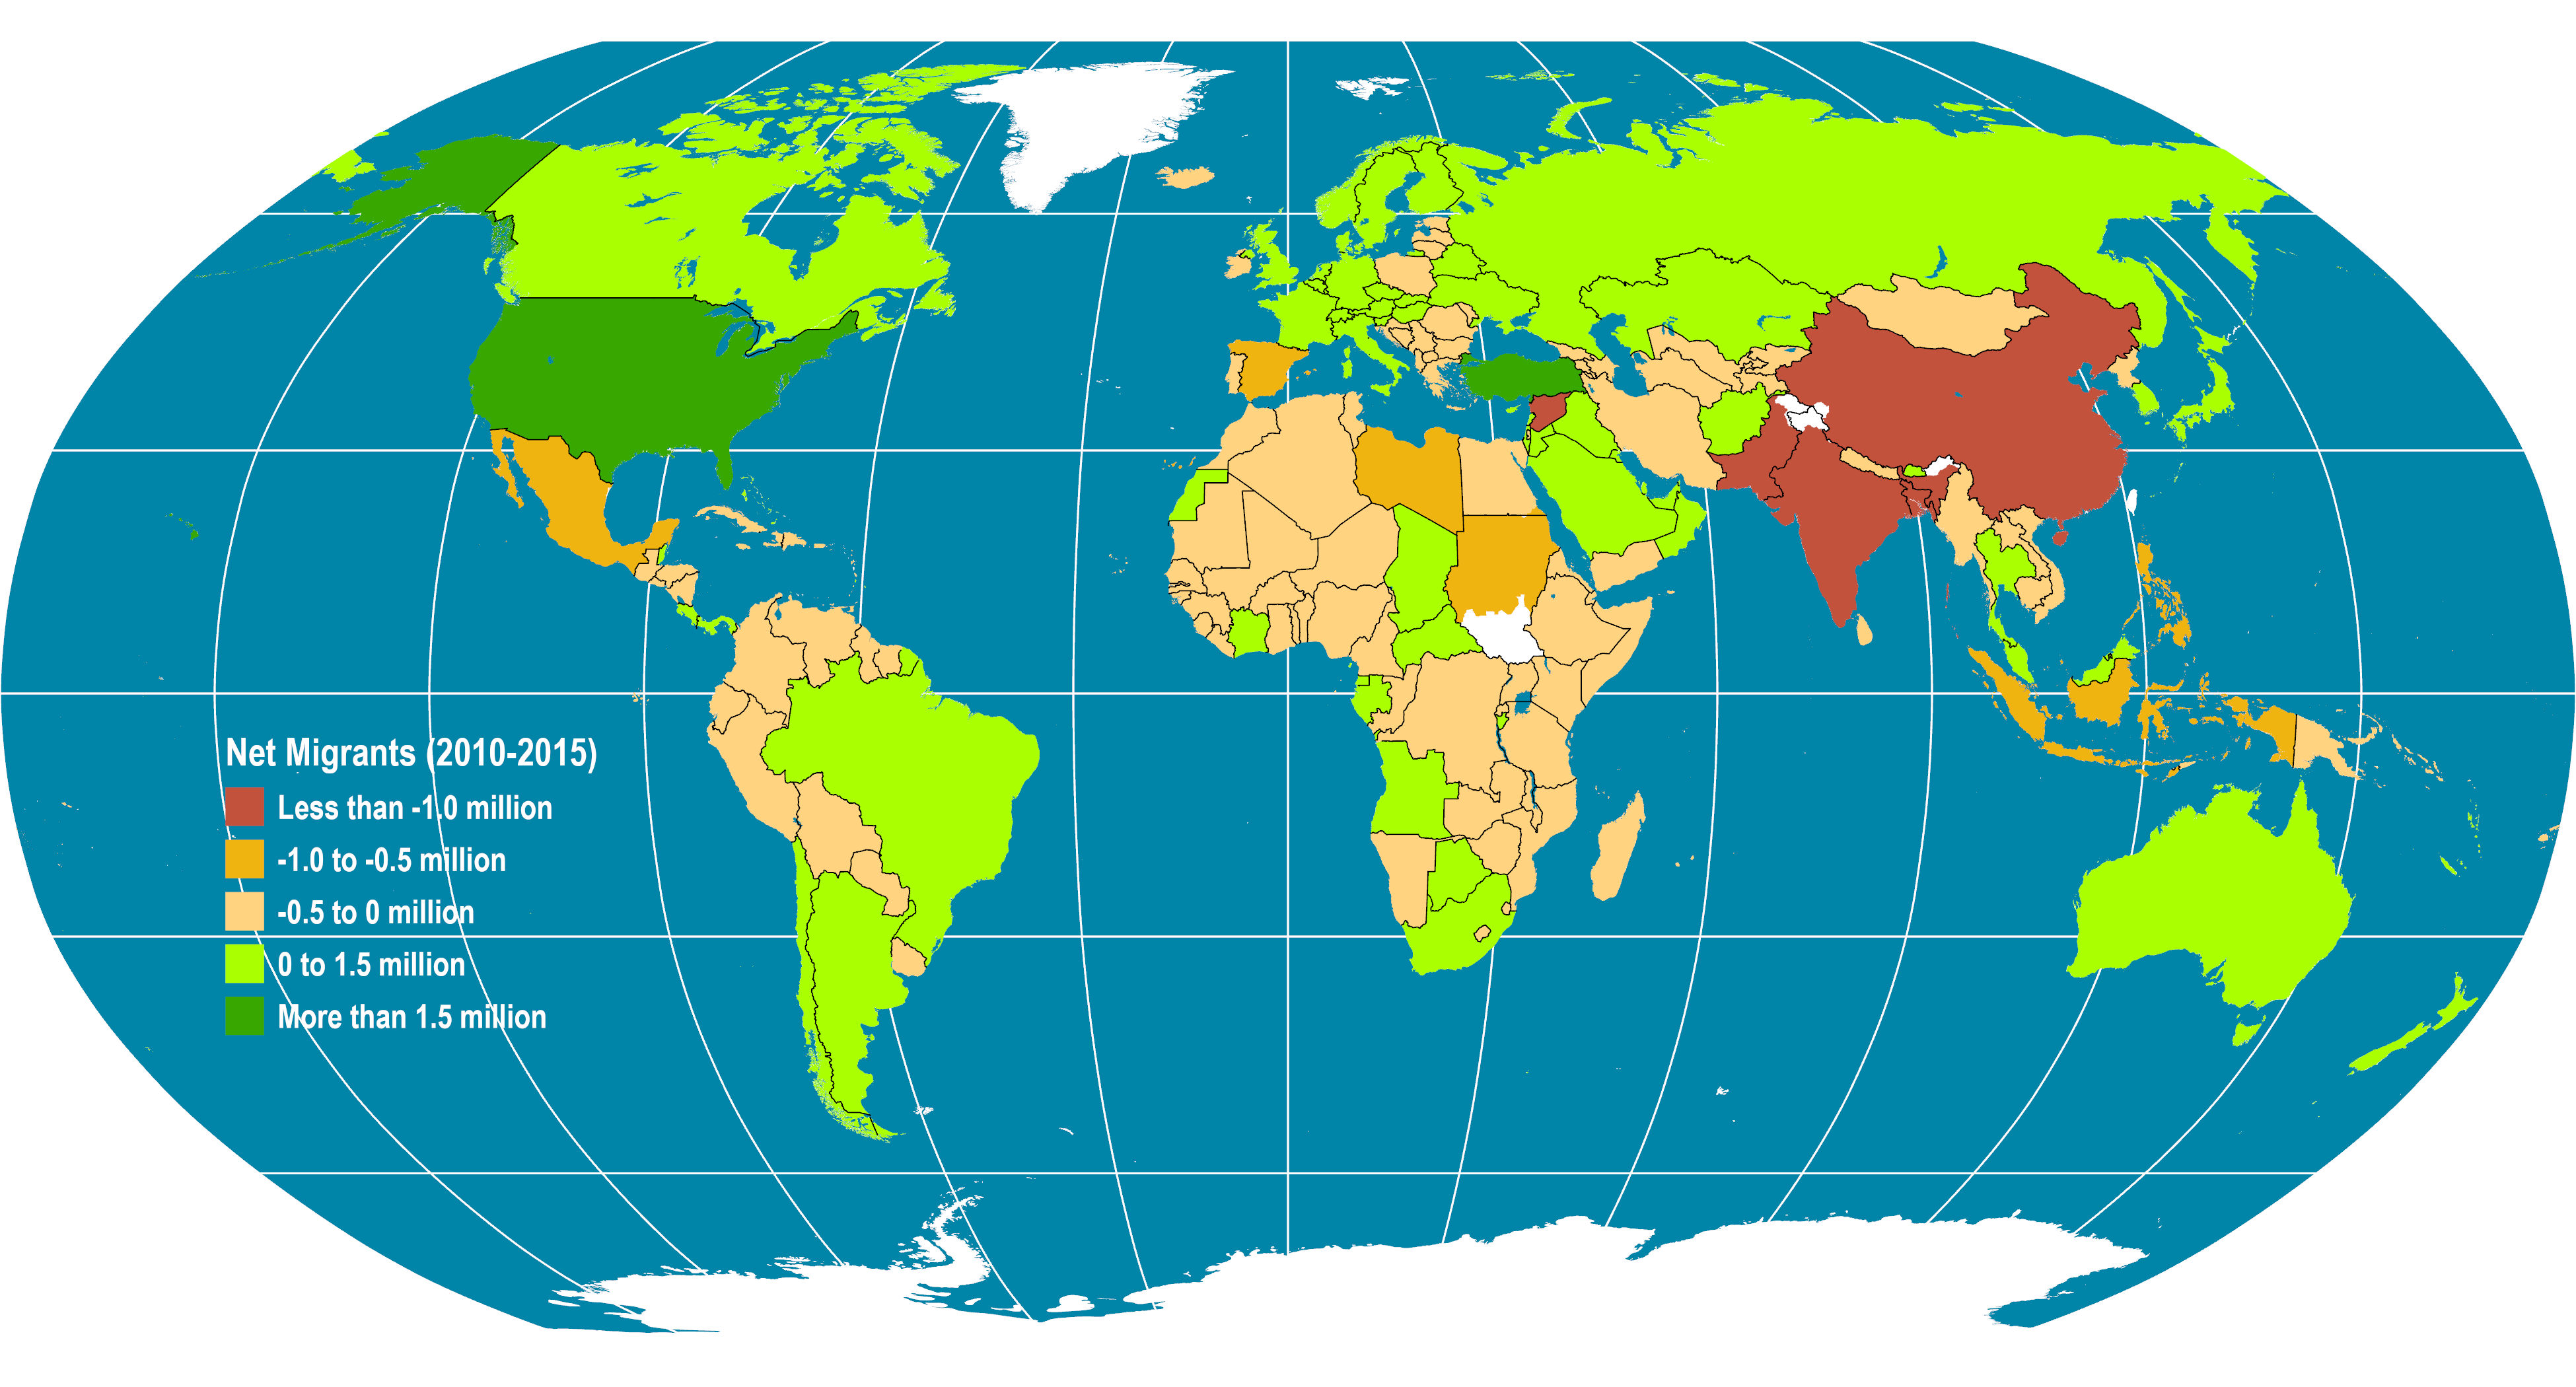 Global Net Migration (2010